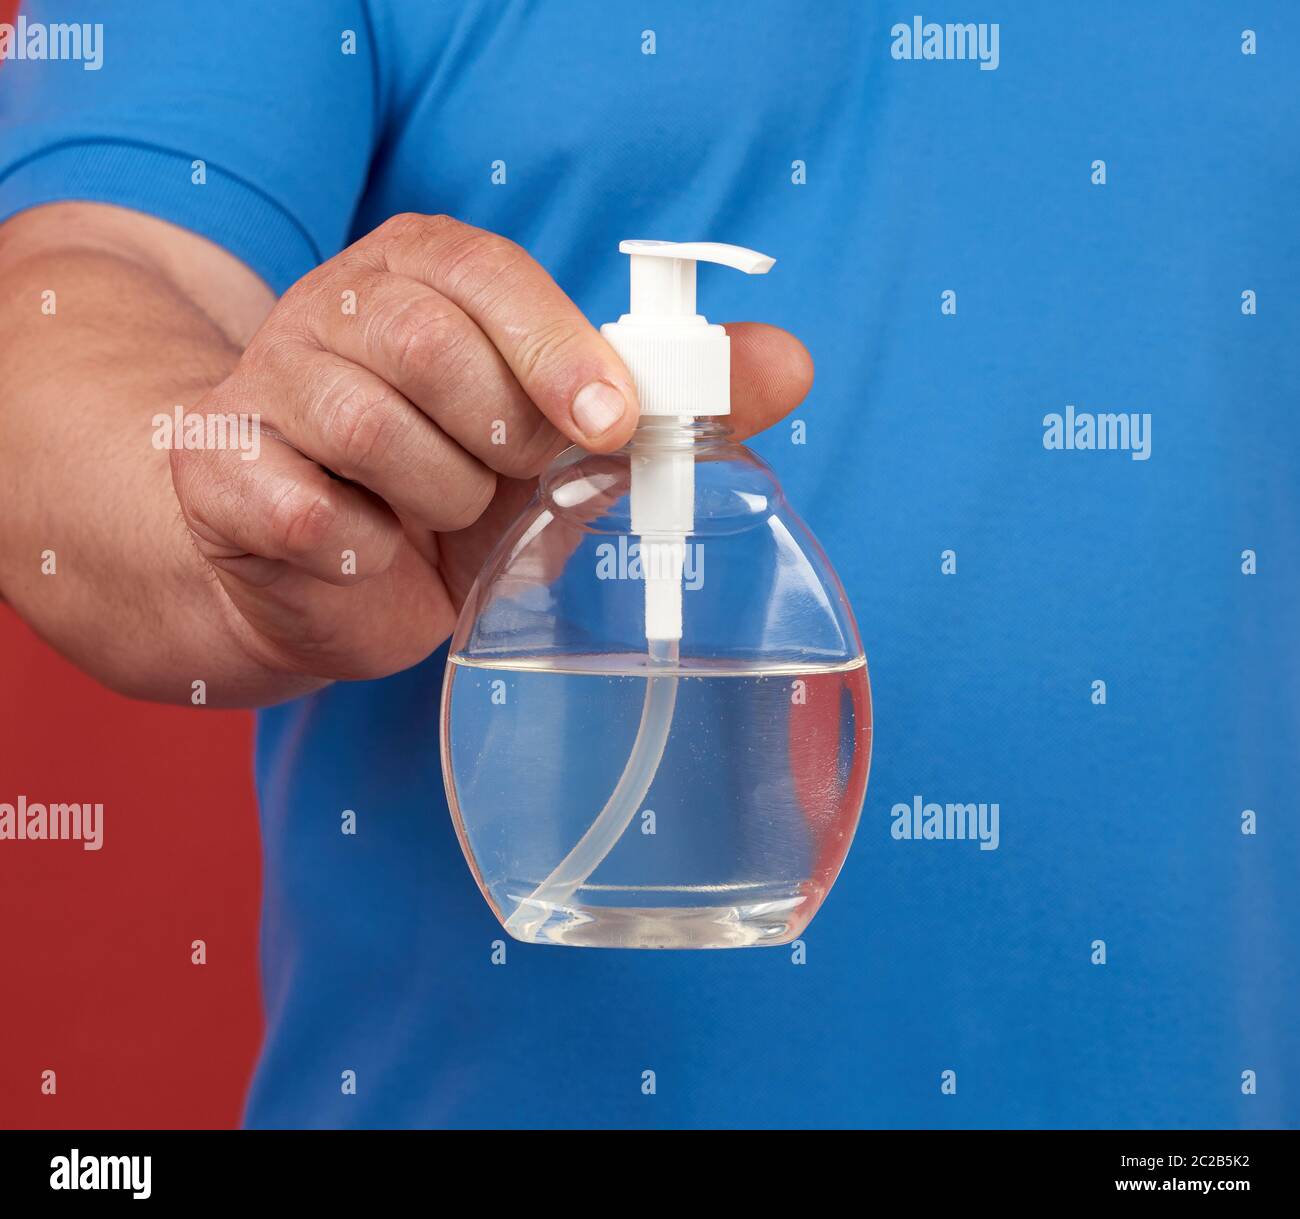 El hombre en una camiseta azul sostiene un recipiente de plástico transparente con un desinfectante de manos, un producto de higiene contra enfermedades virales Foto de stock